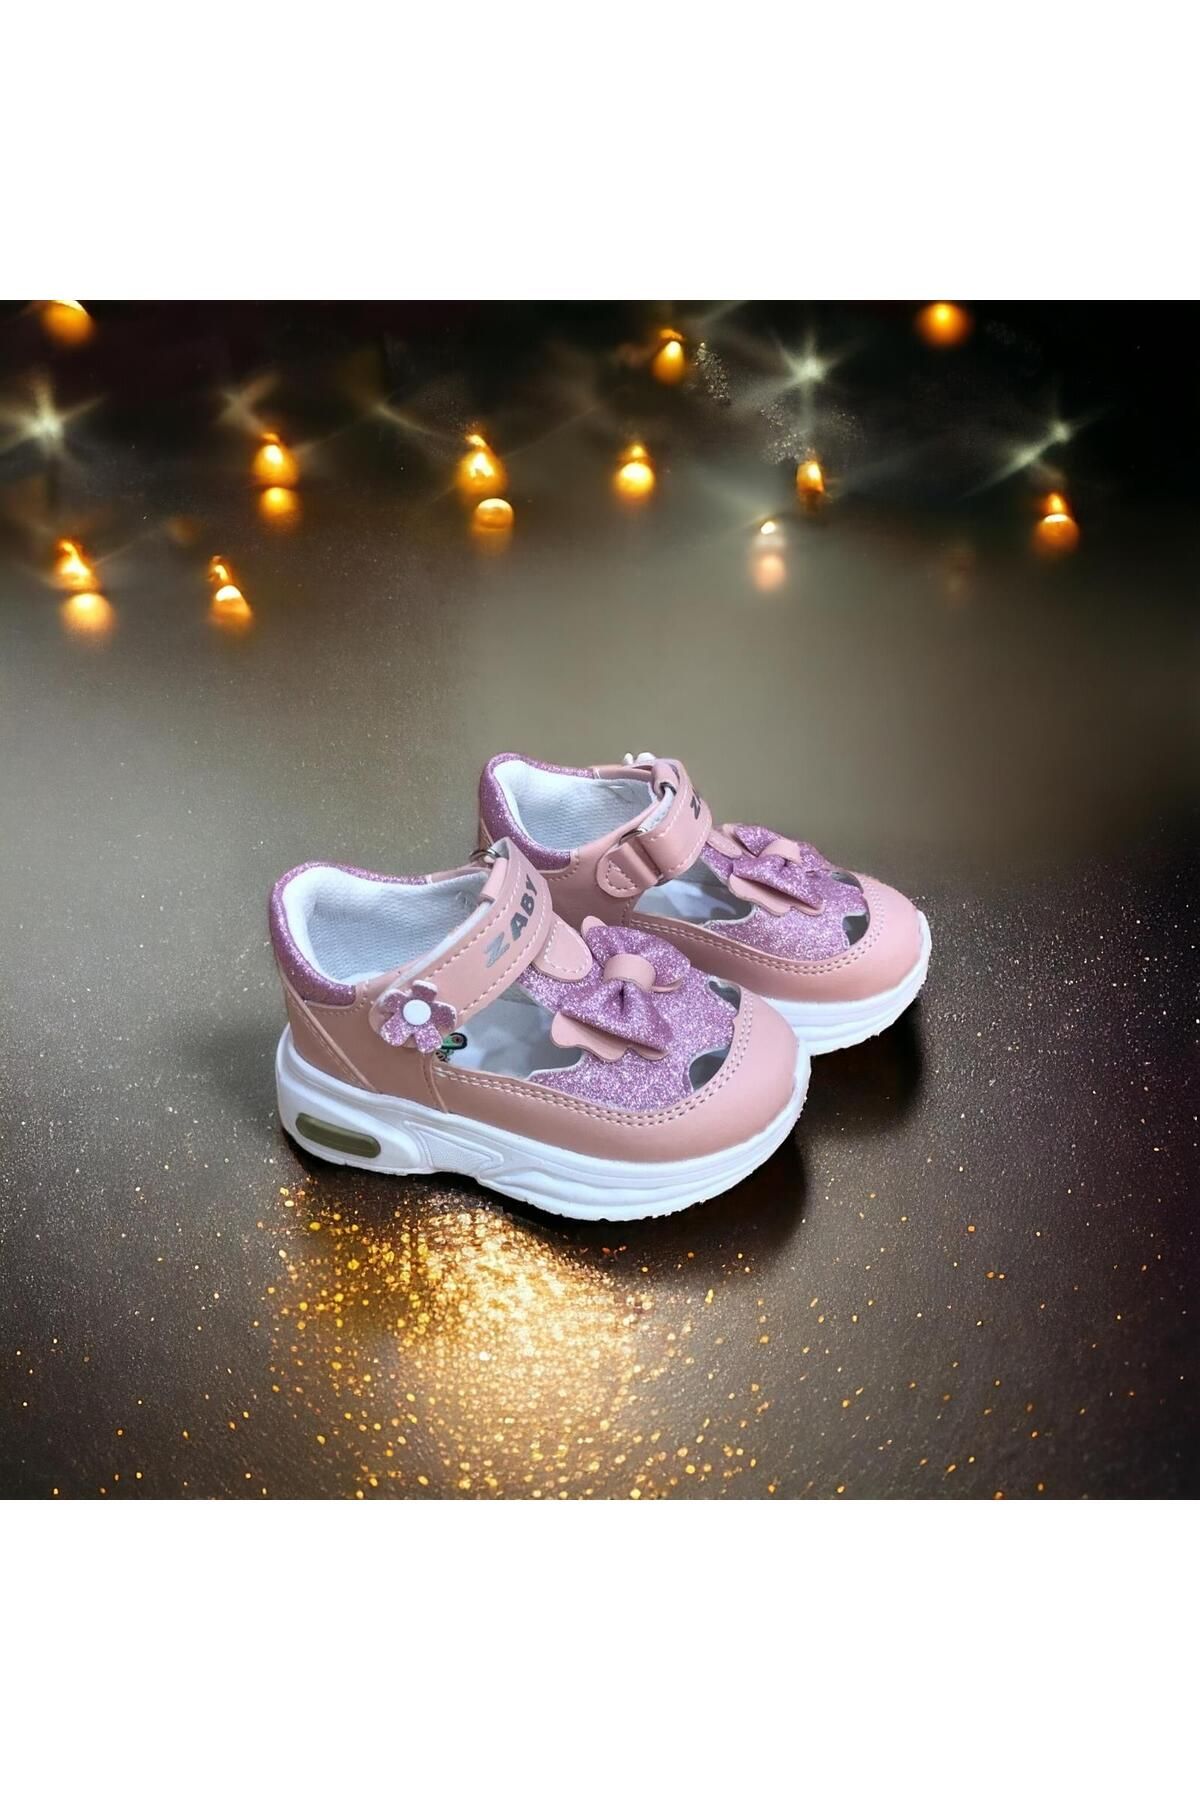 CihanShoes Kız Bebe Ortopedik Cırtlı Esnek Hafif Nefes Alabilen Pembe Renk Işıklı Bebek Sneaker Spor Ayakkabı